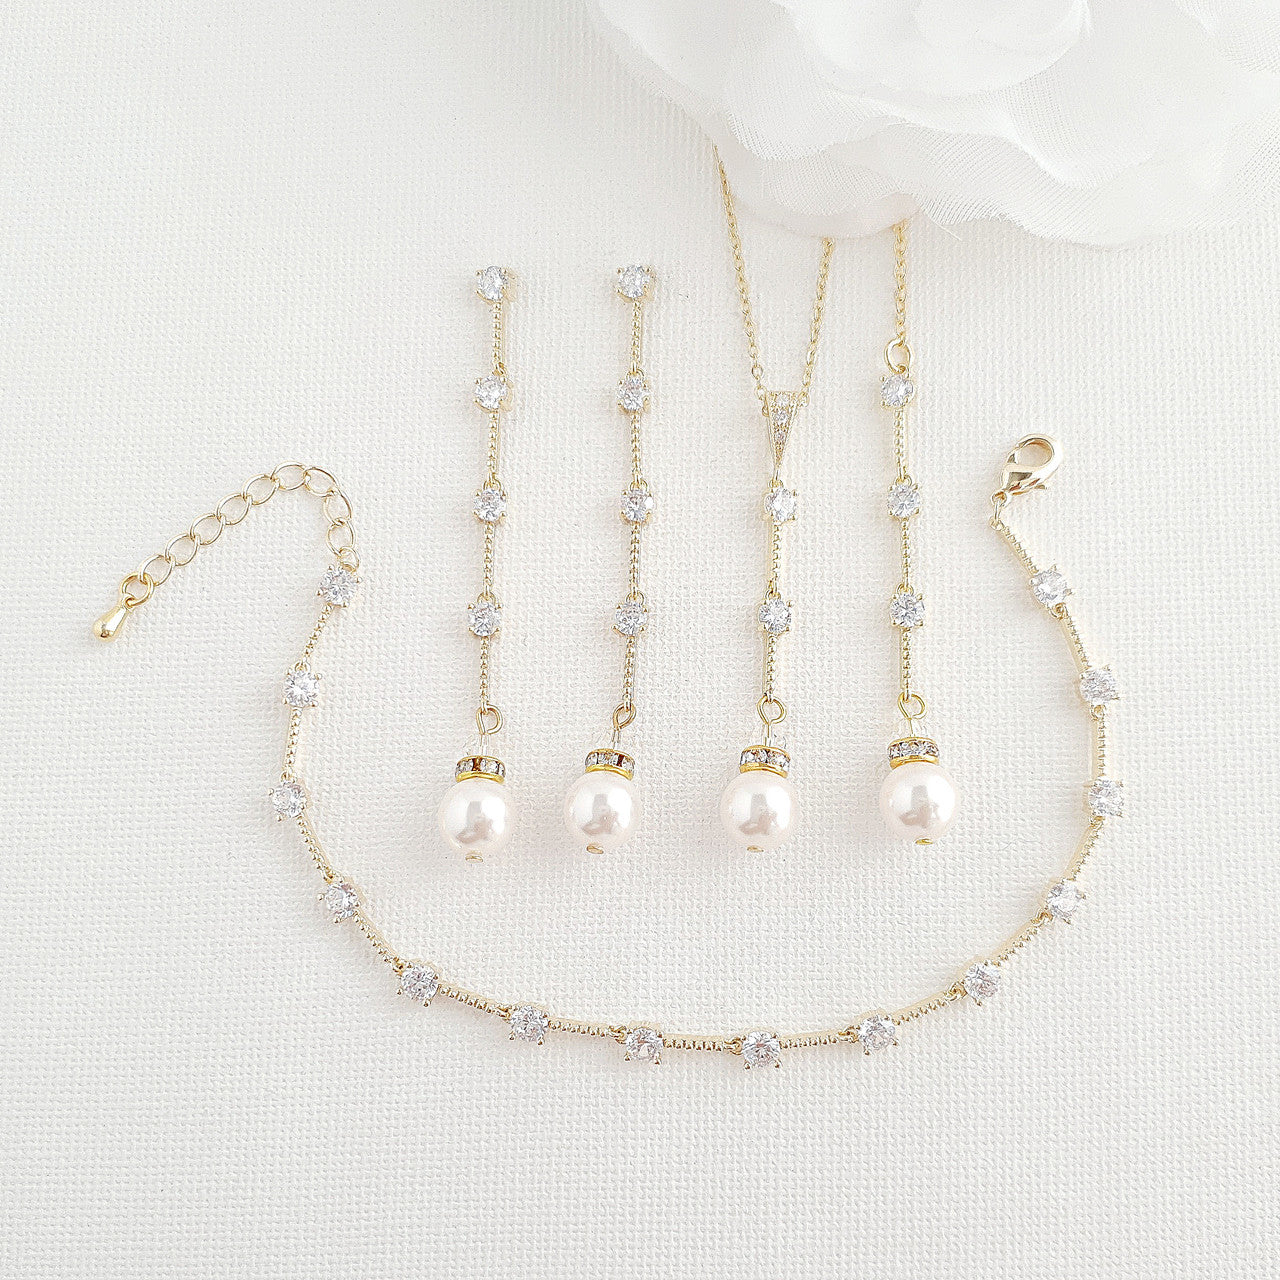 Rose Gold Pearl Drop Necklace Set-Ginger